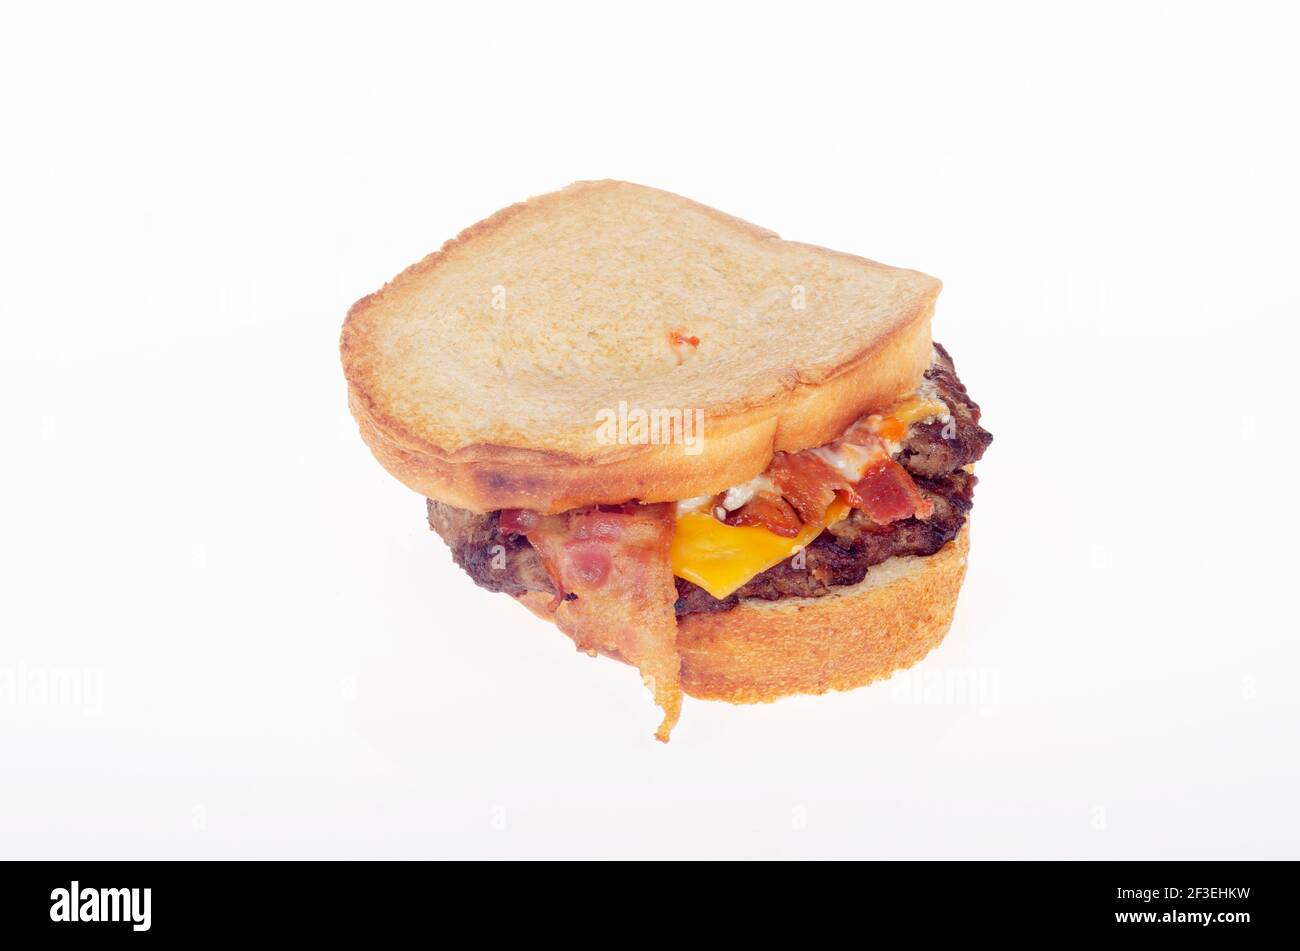 Burger King Bacon King Sourdough Cheeseburger Stock Photo